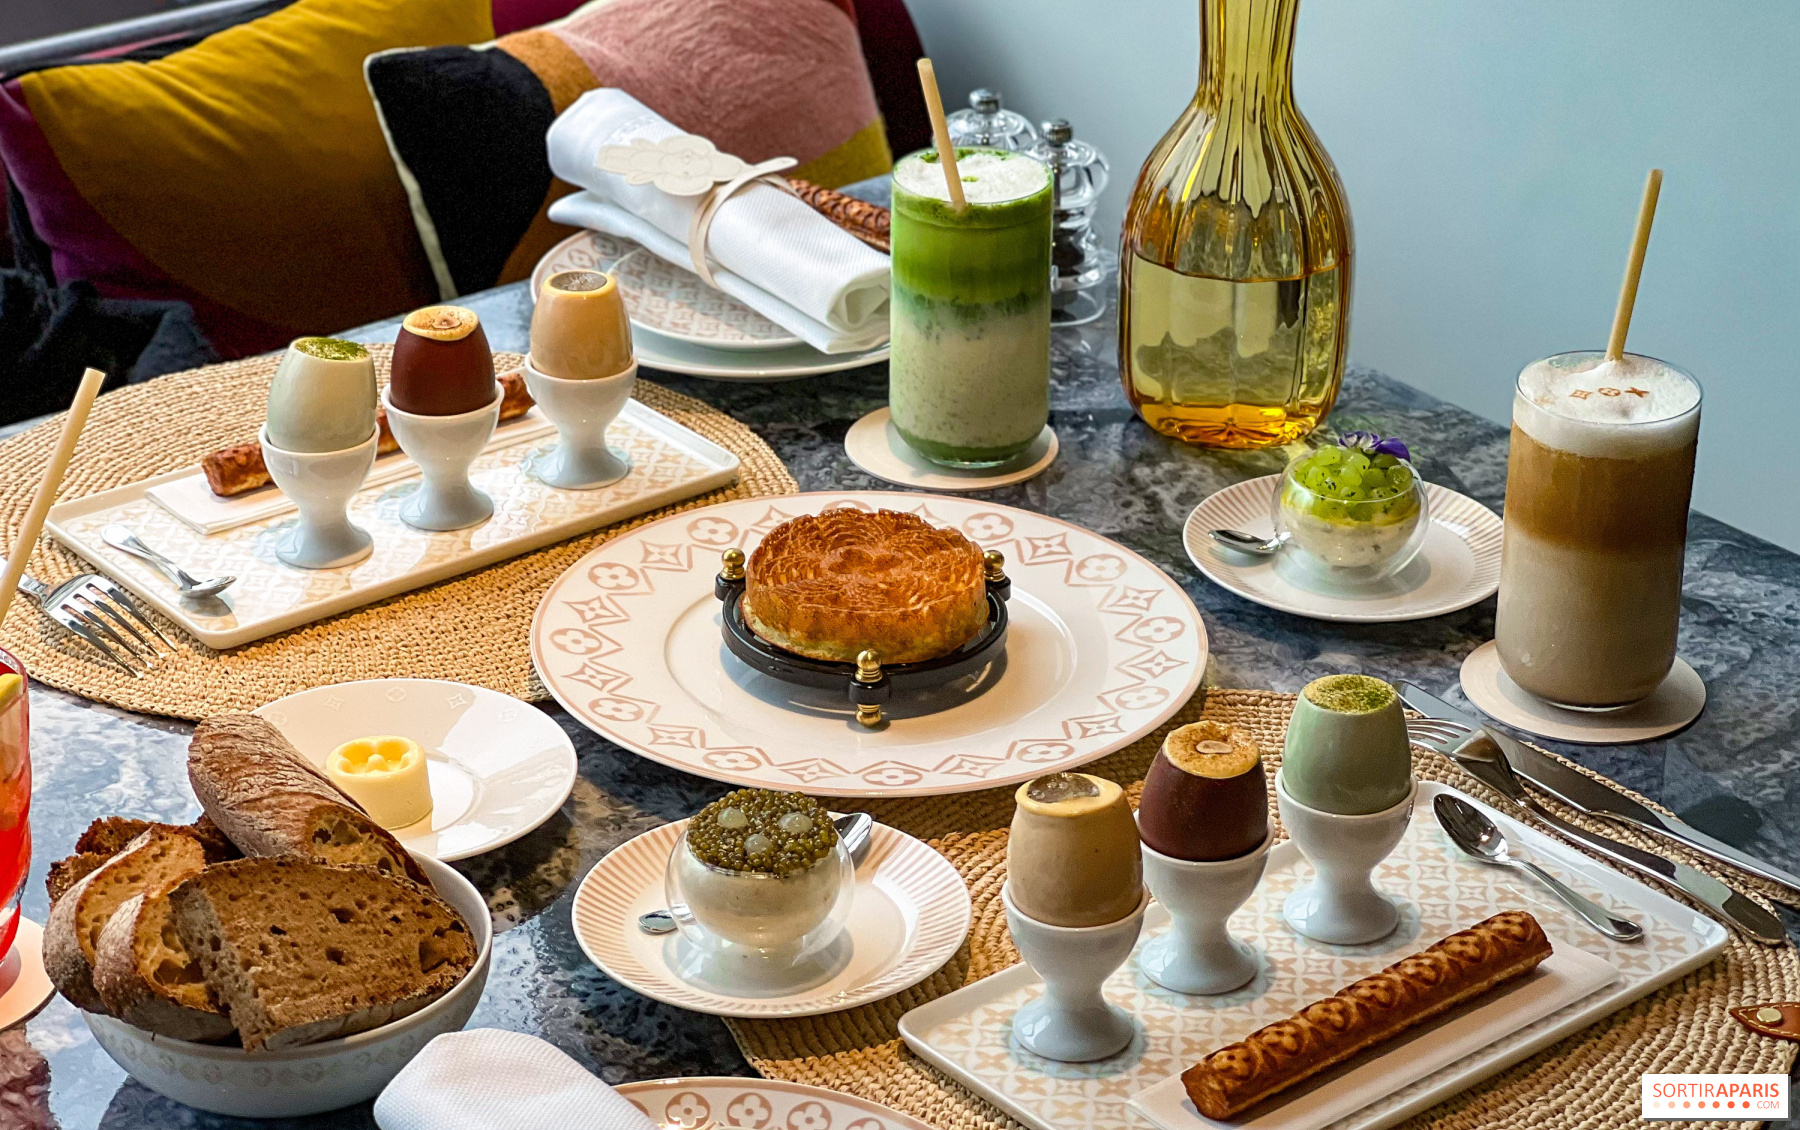 Louis Vuitton Café in Paris: All about the new elegant spot at